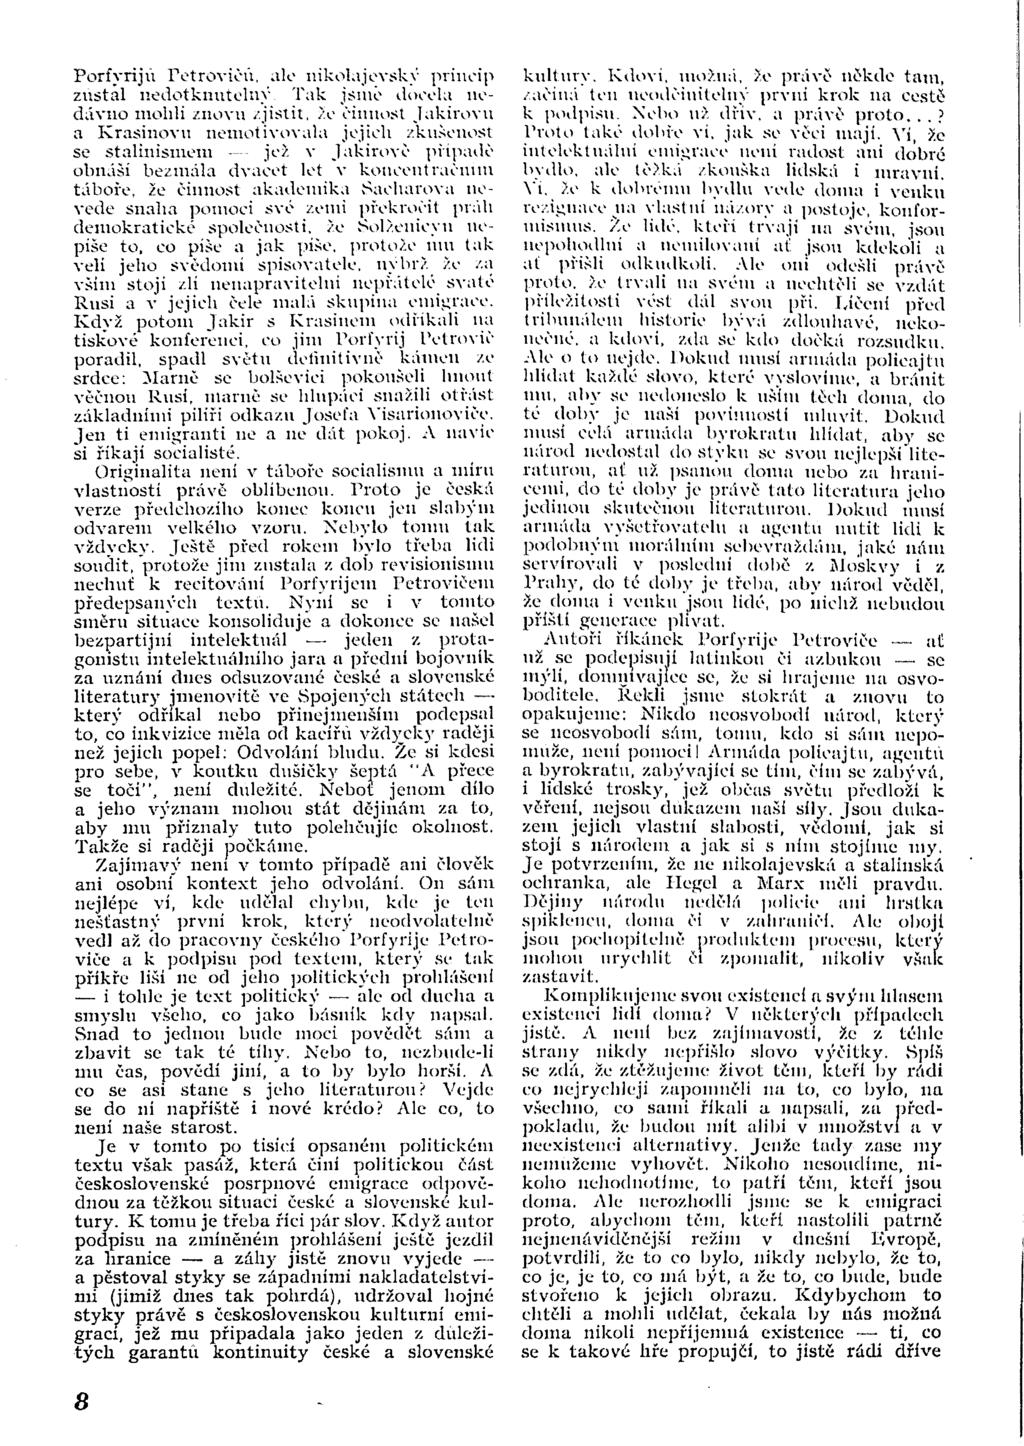 loi 1 MORÁLNÍ PROFIL KONSOLIDOVANÉHO OBČANA TCTV Listopad 1973, c. 5-6  Ročník III. Časopis českoslovensl m socialistické opozice JIŘÍ NEŽÁRKA -  PDF Free Download